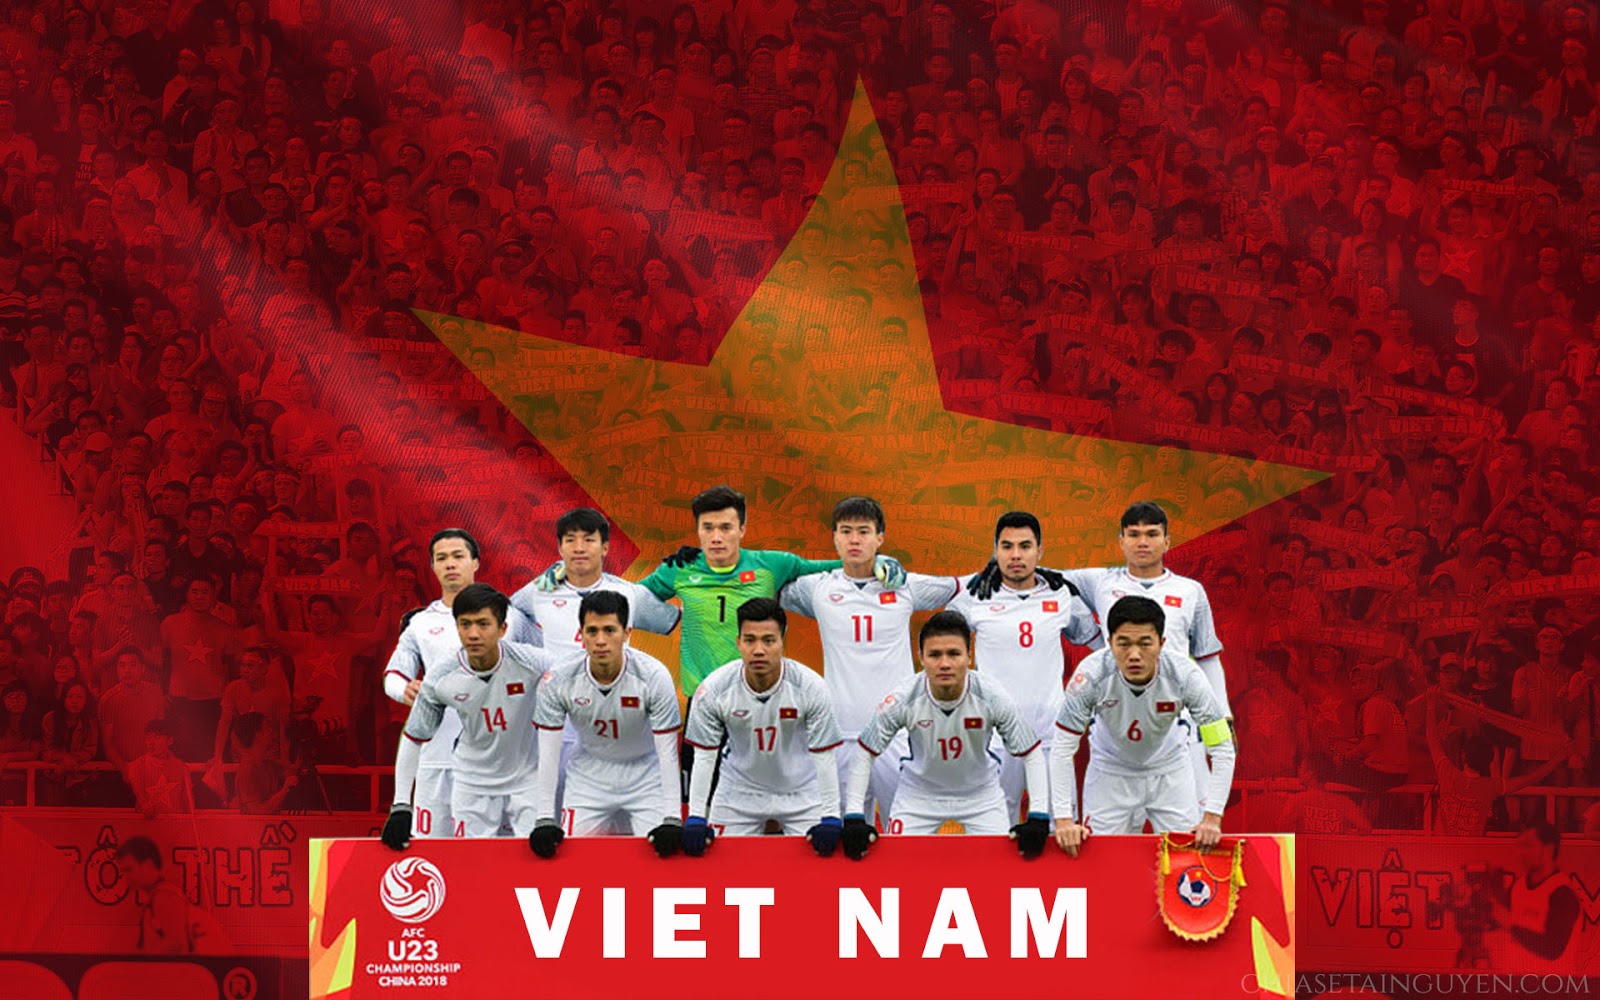 Bộ Hình Nền, Banner Cổ Vũ U23 Việt Nam - Tinh Thần Chiến Thắng